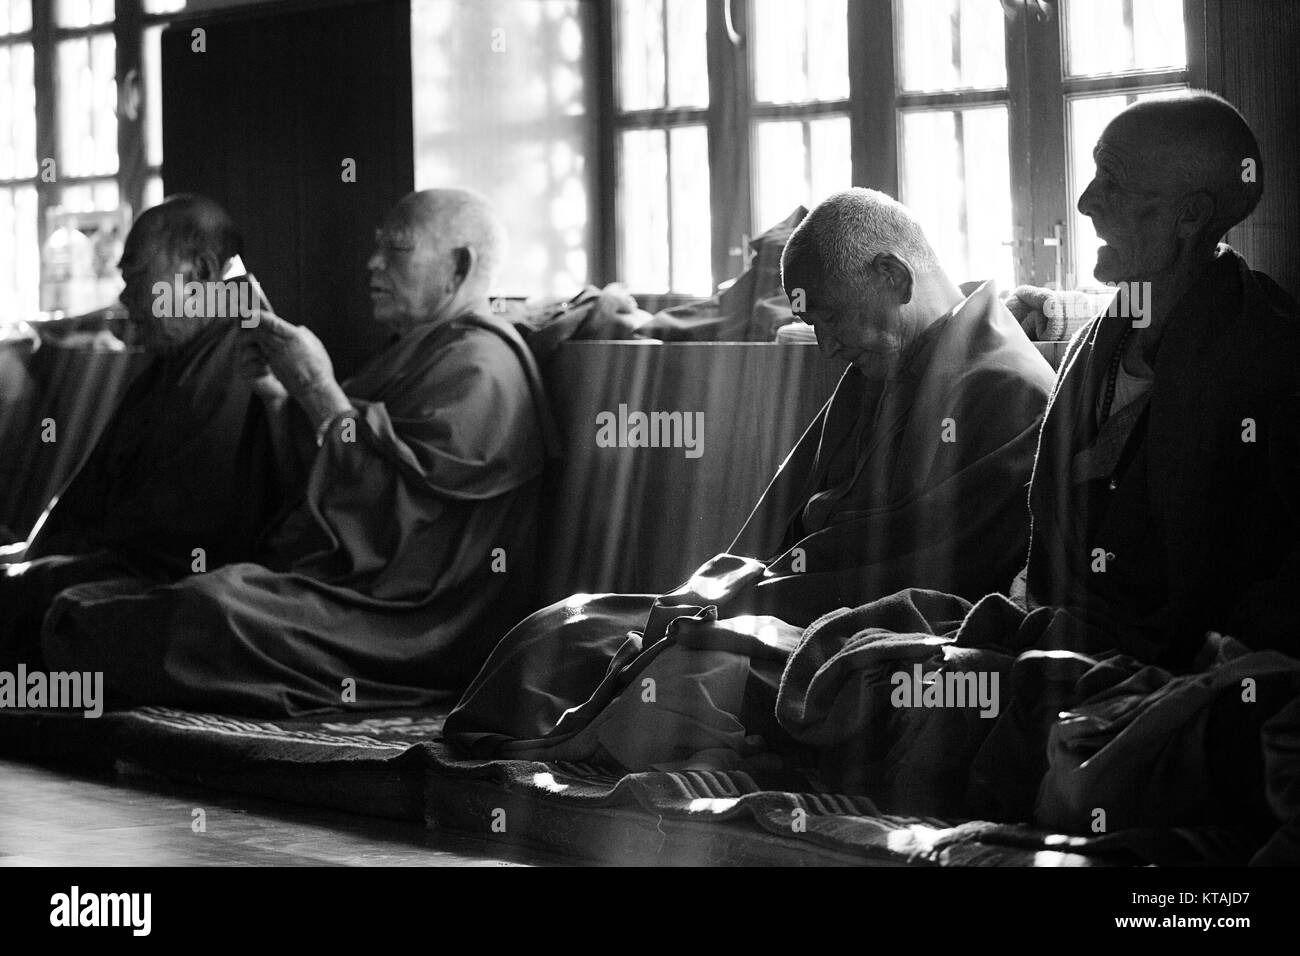 Les moines bouddhistes, assis à la fenêtre et priant jour de festival, le monastère de Diskit, La Vallée de Nubra, Ladakh, le Jammu-et-Cachemire, en Inde. Le noir et blanc Banque D'Images